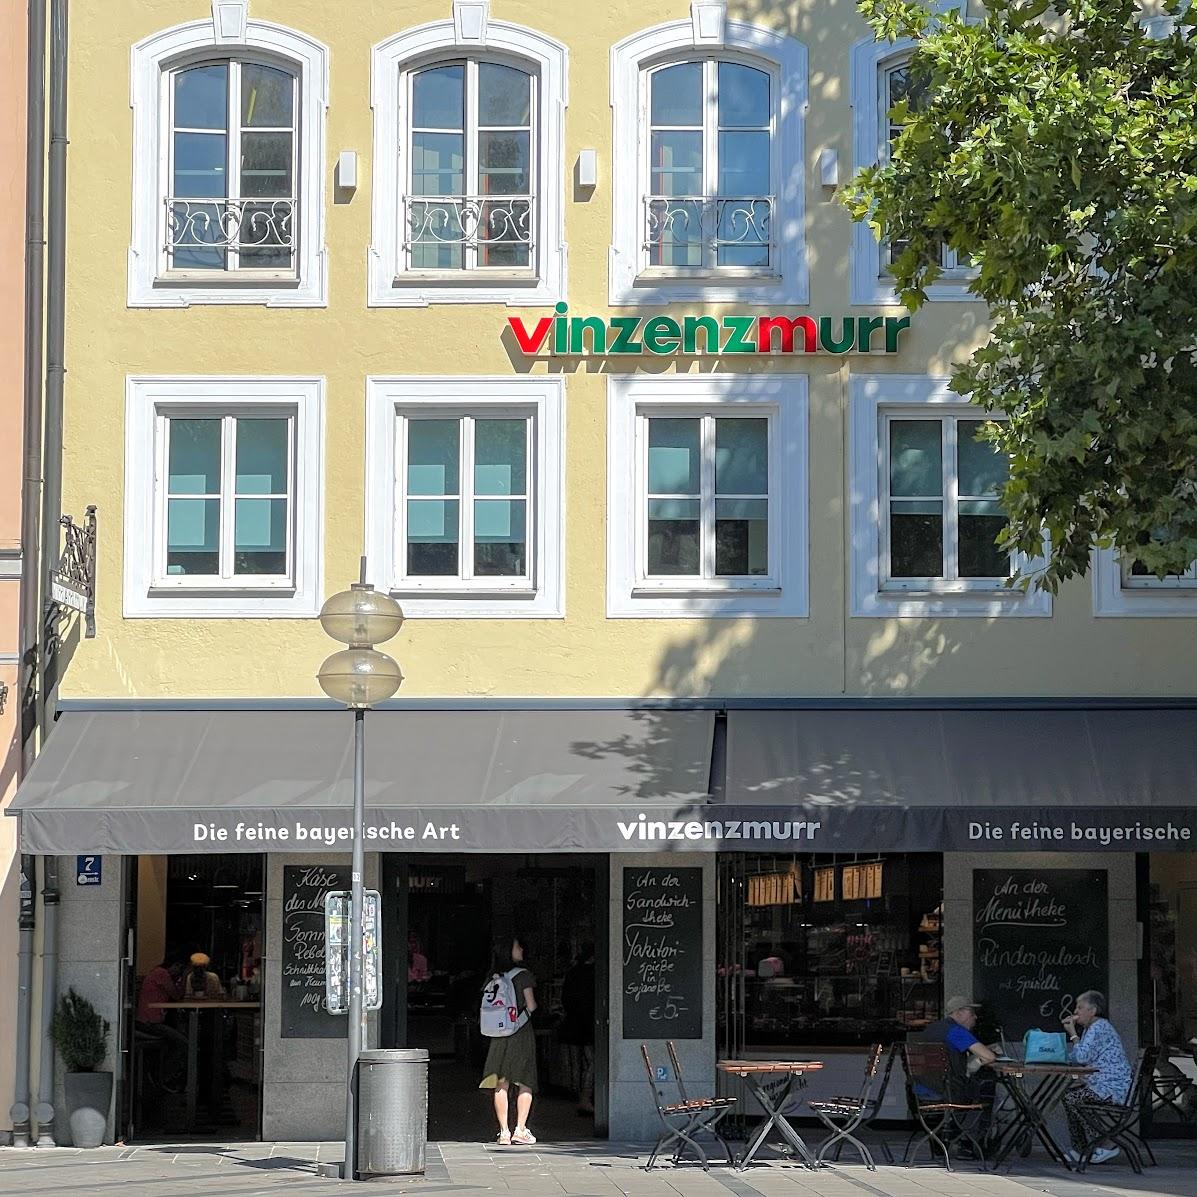 Restaurant "Vinzenzmurr Metzgerei -  - Altstadt" in München